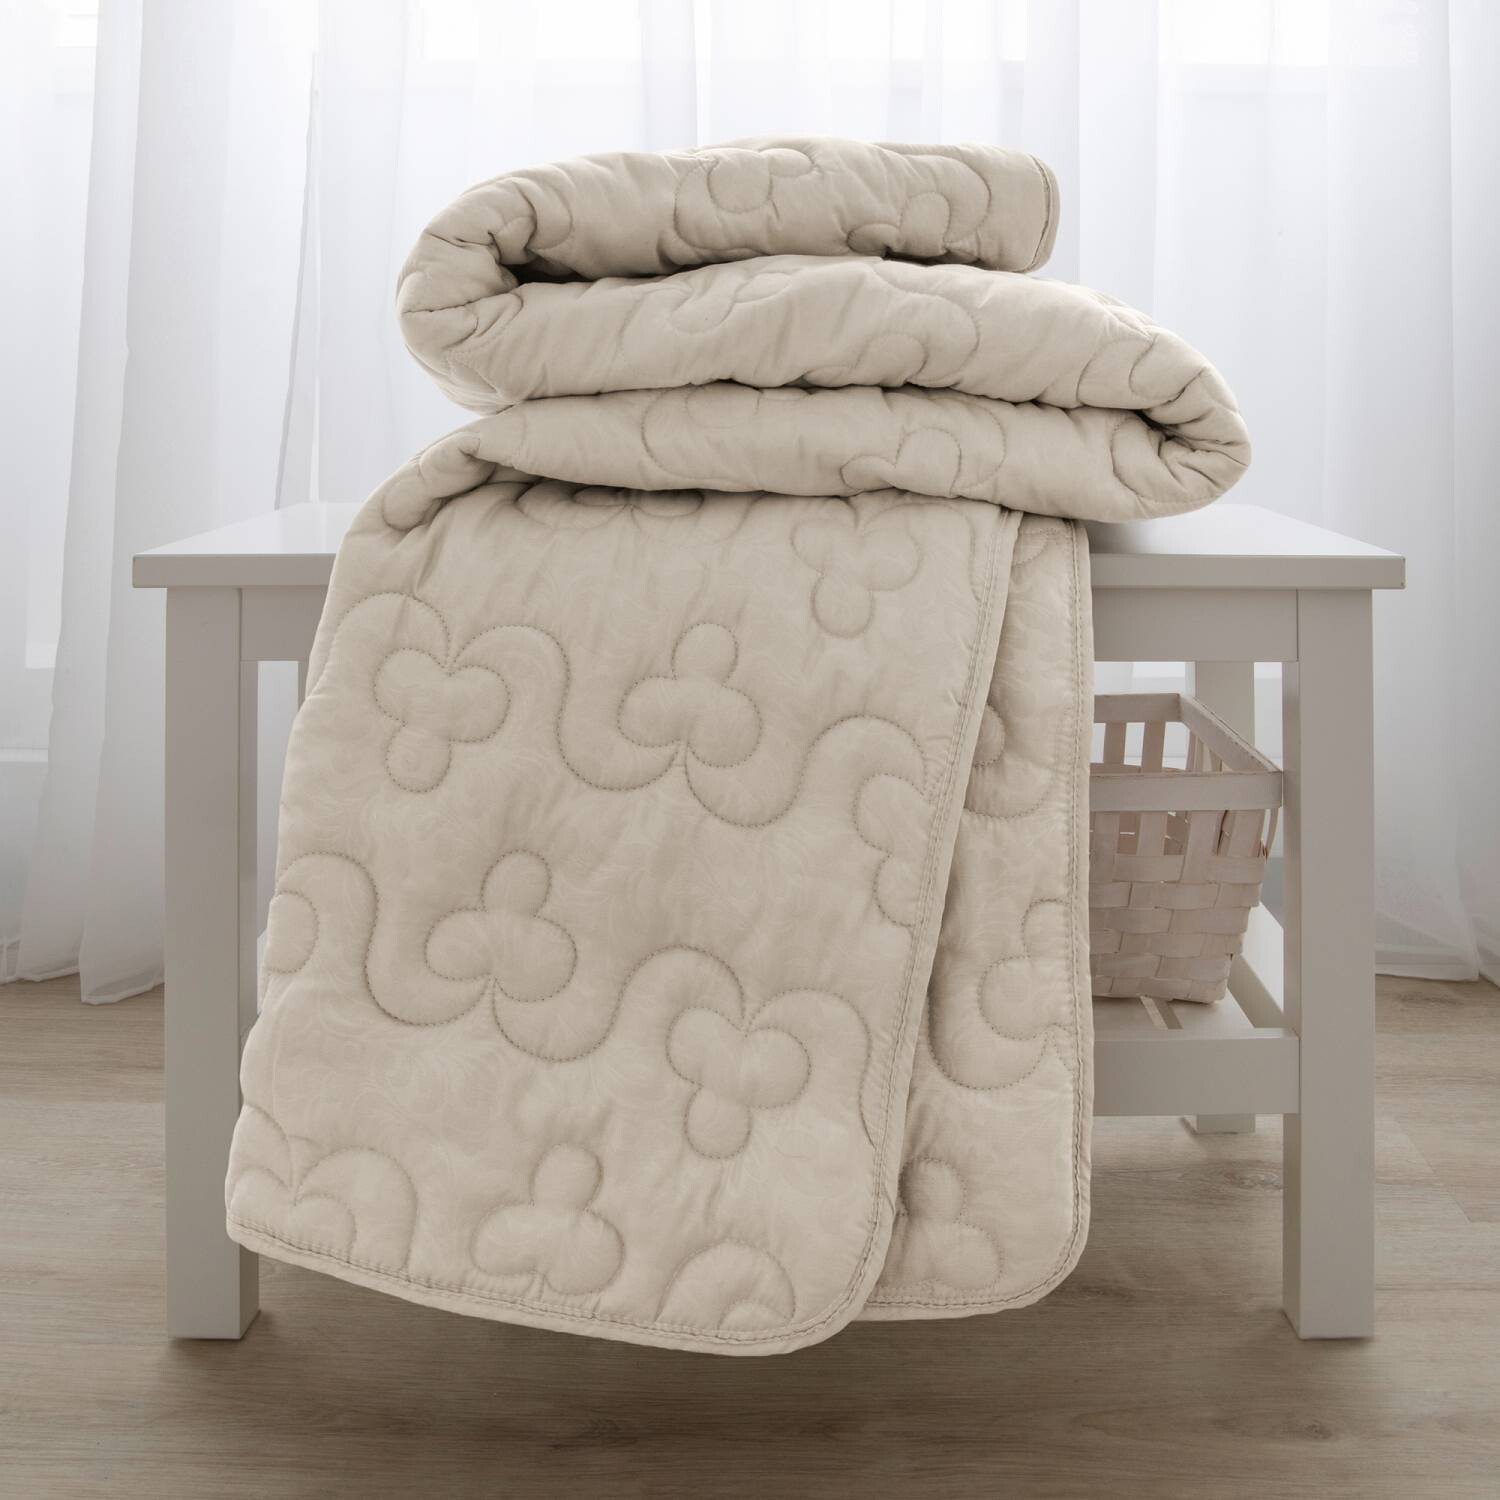 Одеяло с наполнителем из хлопка классическое 140*205 см